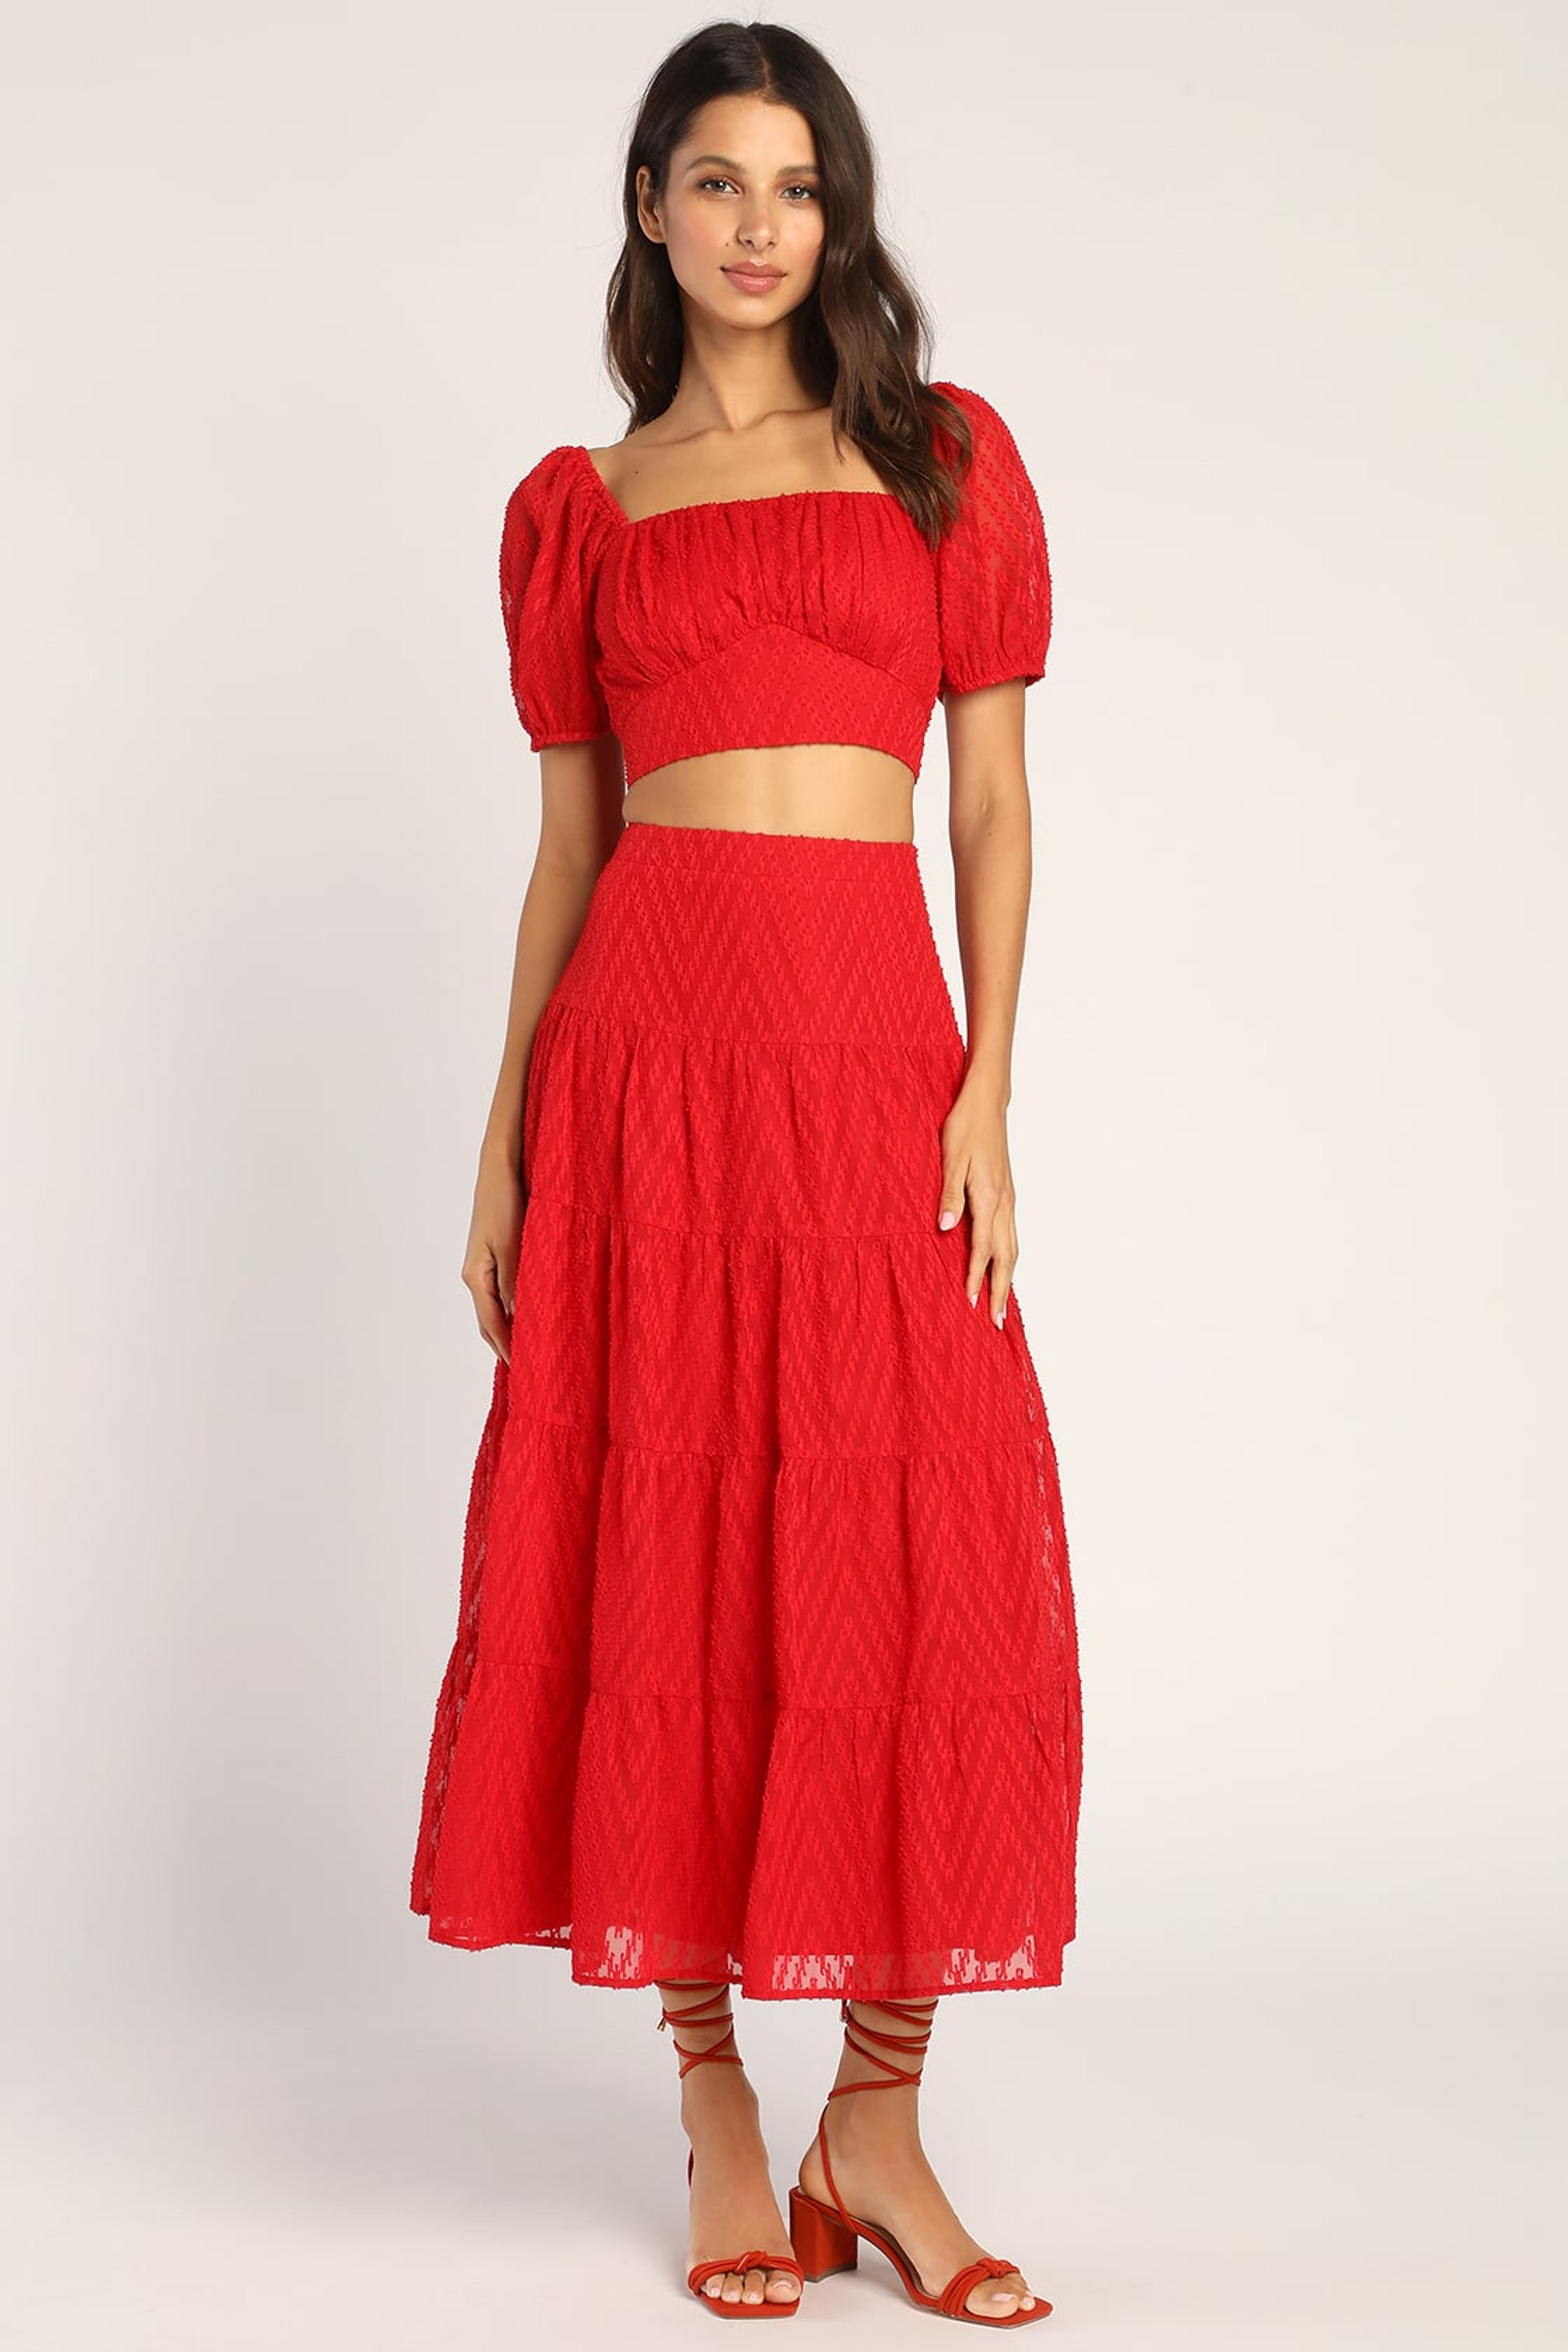 Red Midi Skirt - Jacquard Midi Skirt - Tiered Skirt - Lulus